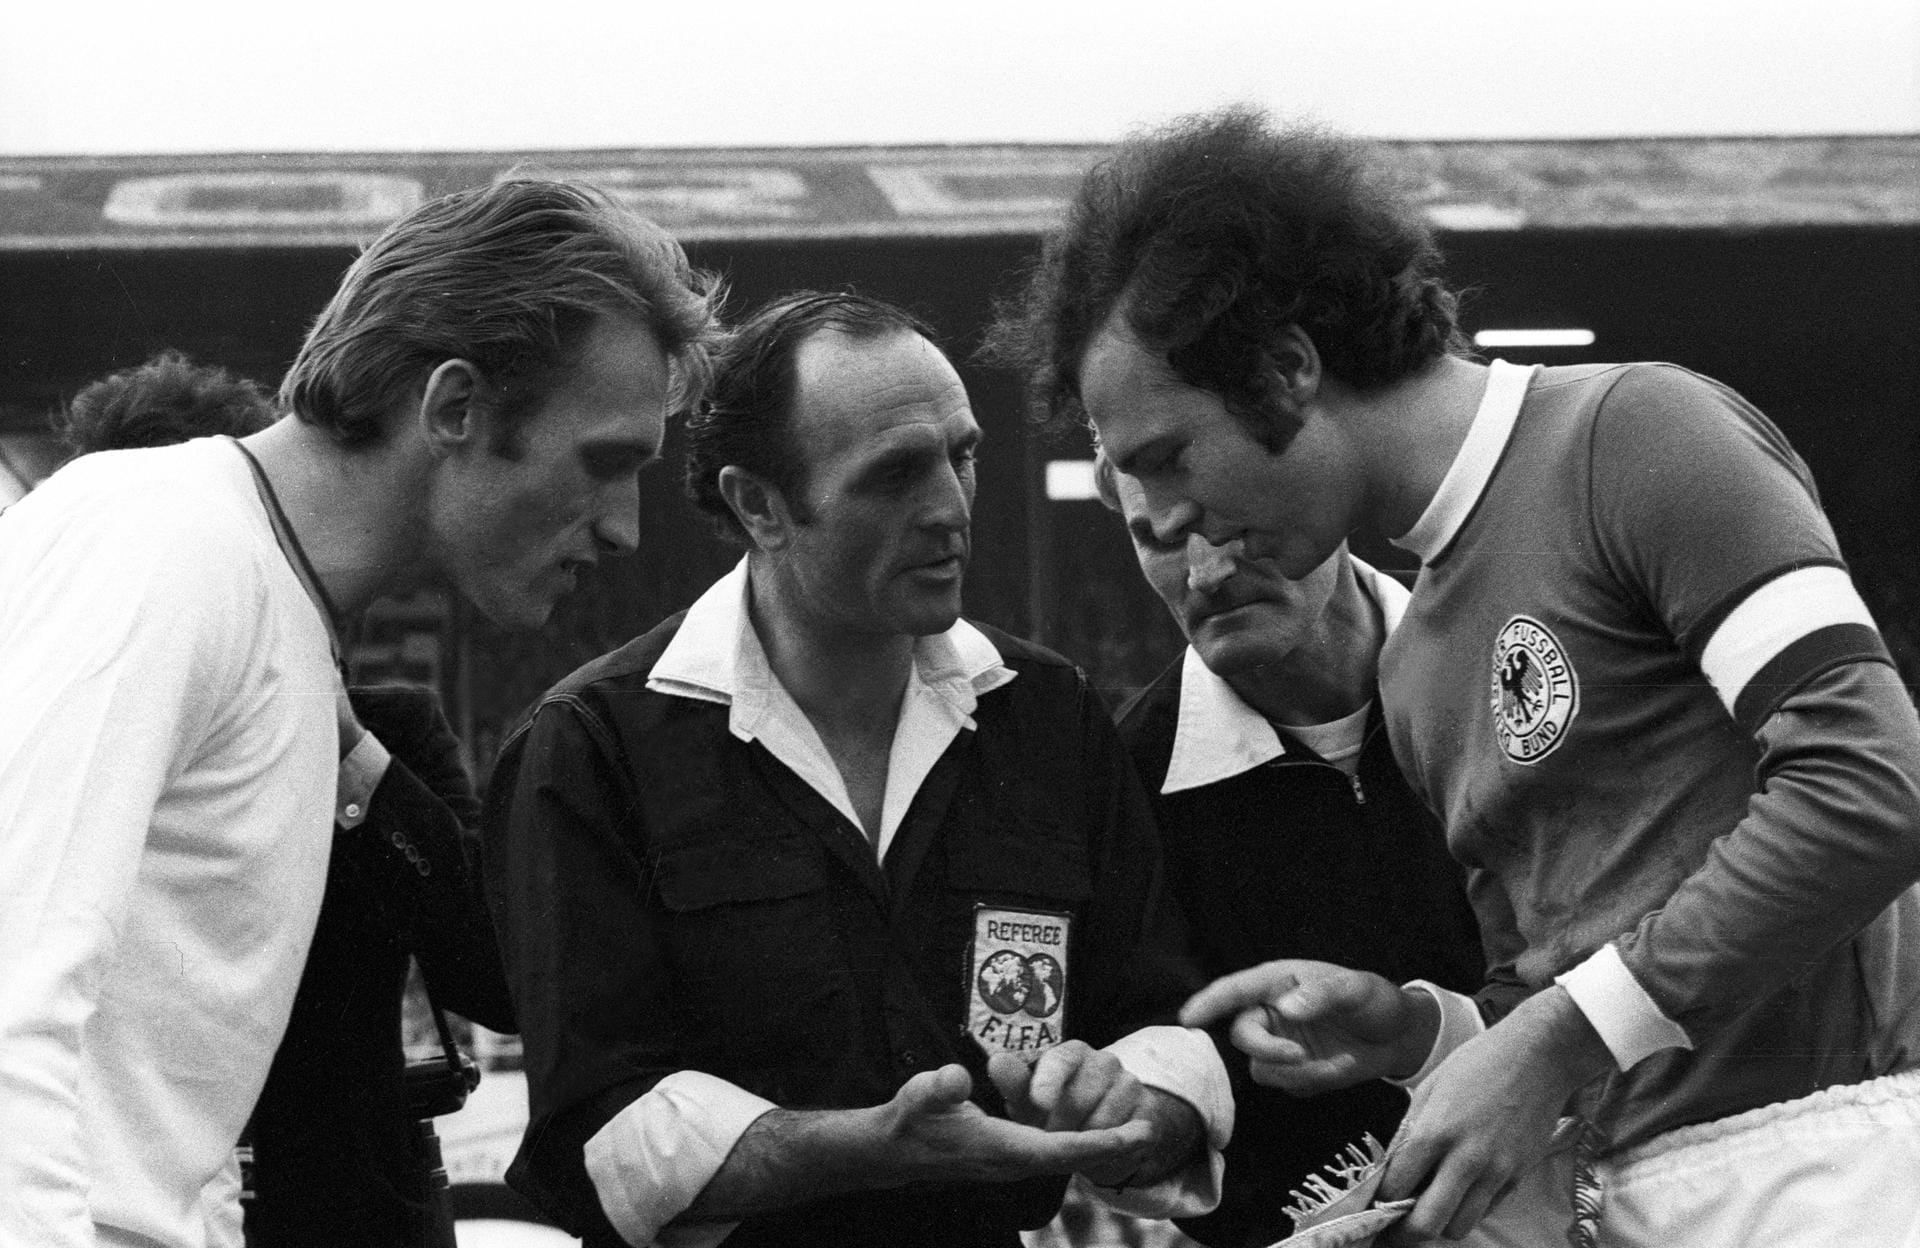 1971 führt Beckenbauer die DFB-Nationalmannschaft erstmals als Kapitän aufs Feld. Hier ist er bei der Seitenwahl vor dem EM-Halbfinale 1972 zu sehen. Im Finale besiegt Deutschland die UdSSR und erringt den Europameistertitel.